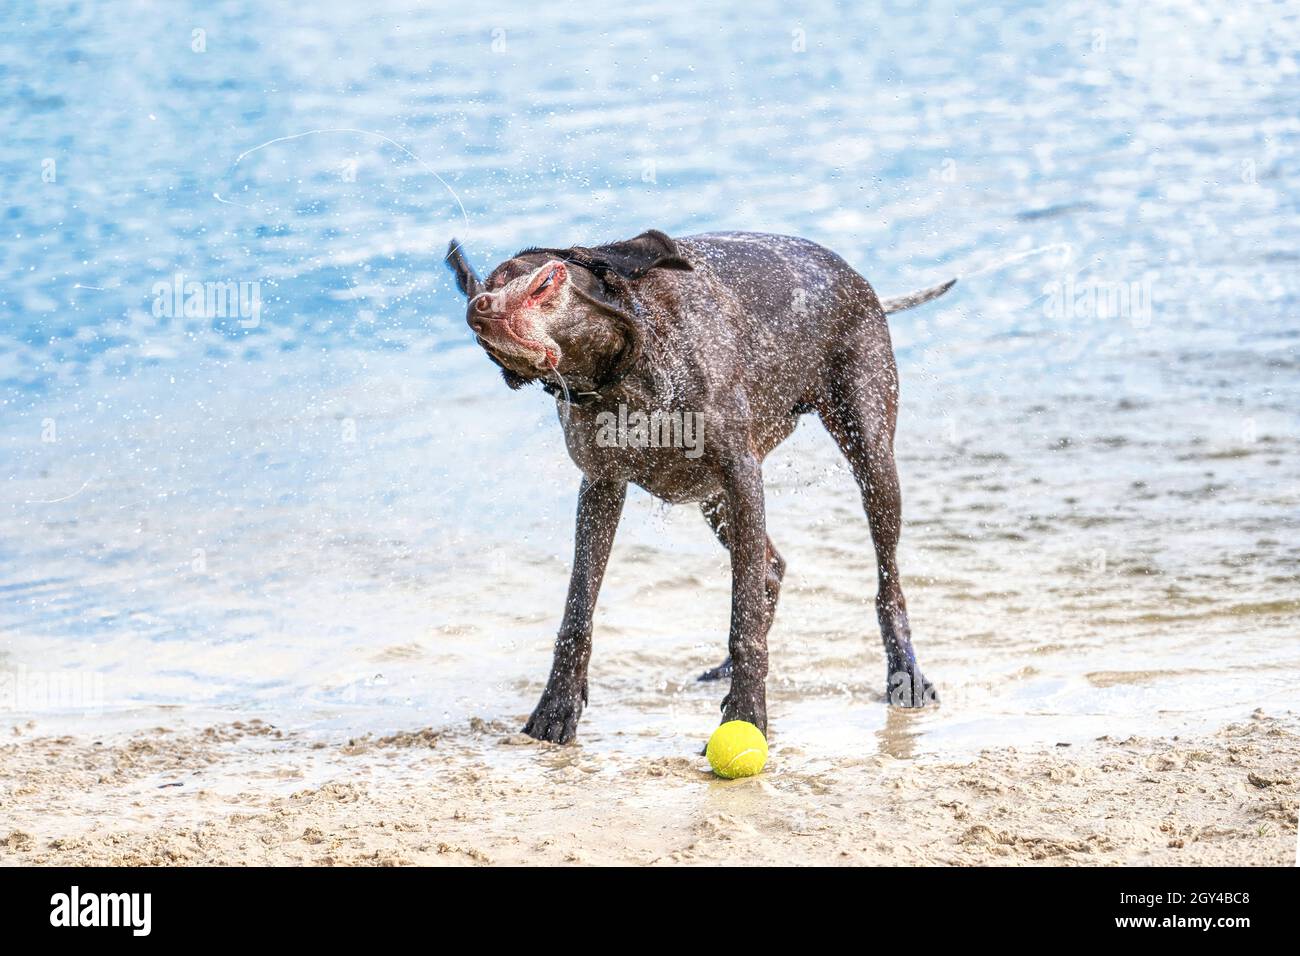 La lancetta tedesca dai capelli corti si trova sulla sabbia. Il cane si scrolla dopo il nuoto nel lago blu. Alette per orecchie e bocca, spruzzi d'acqua volano Foto Stock